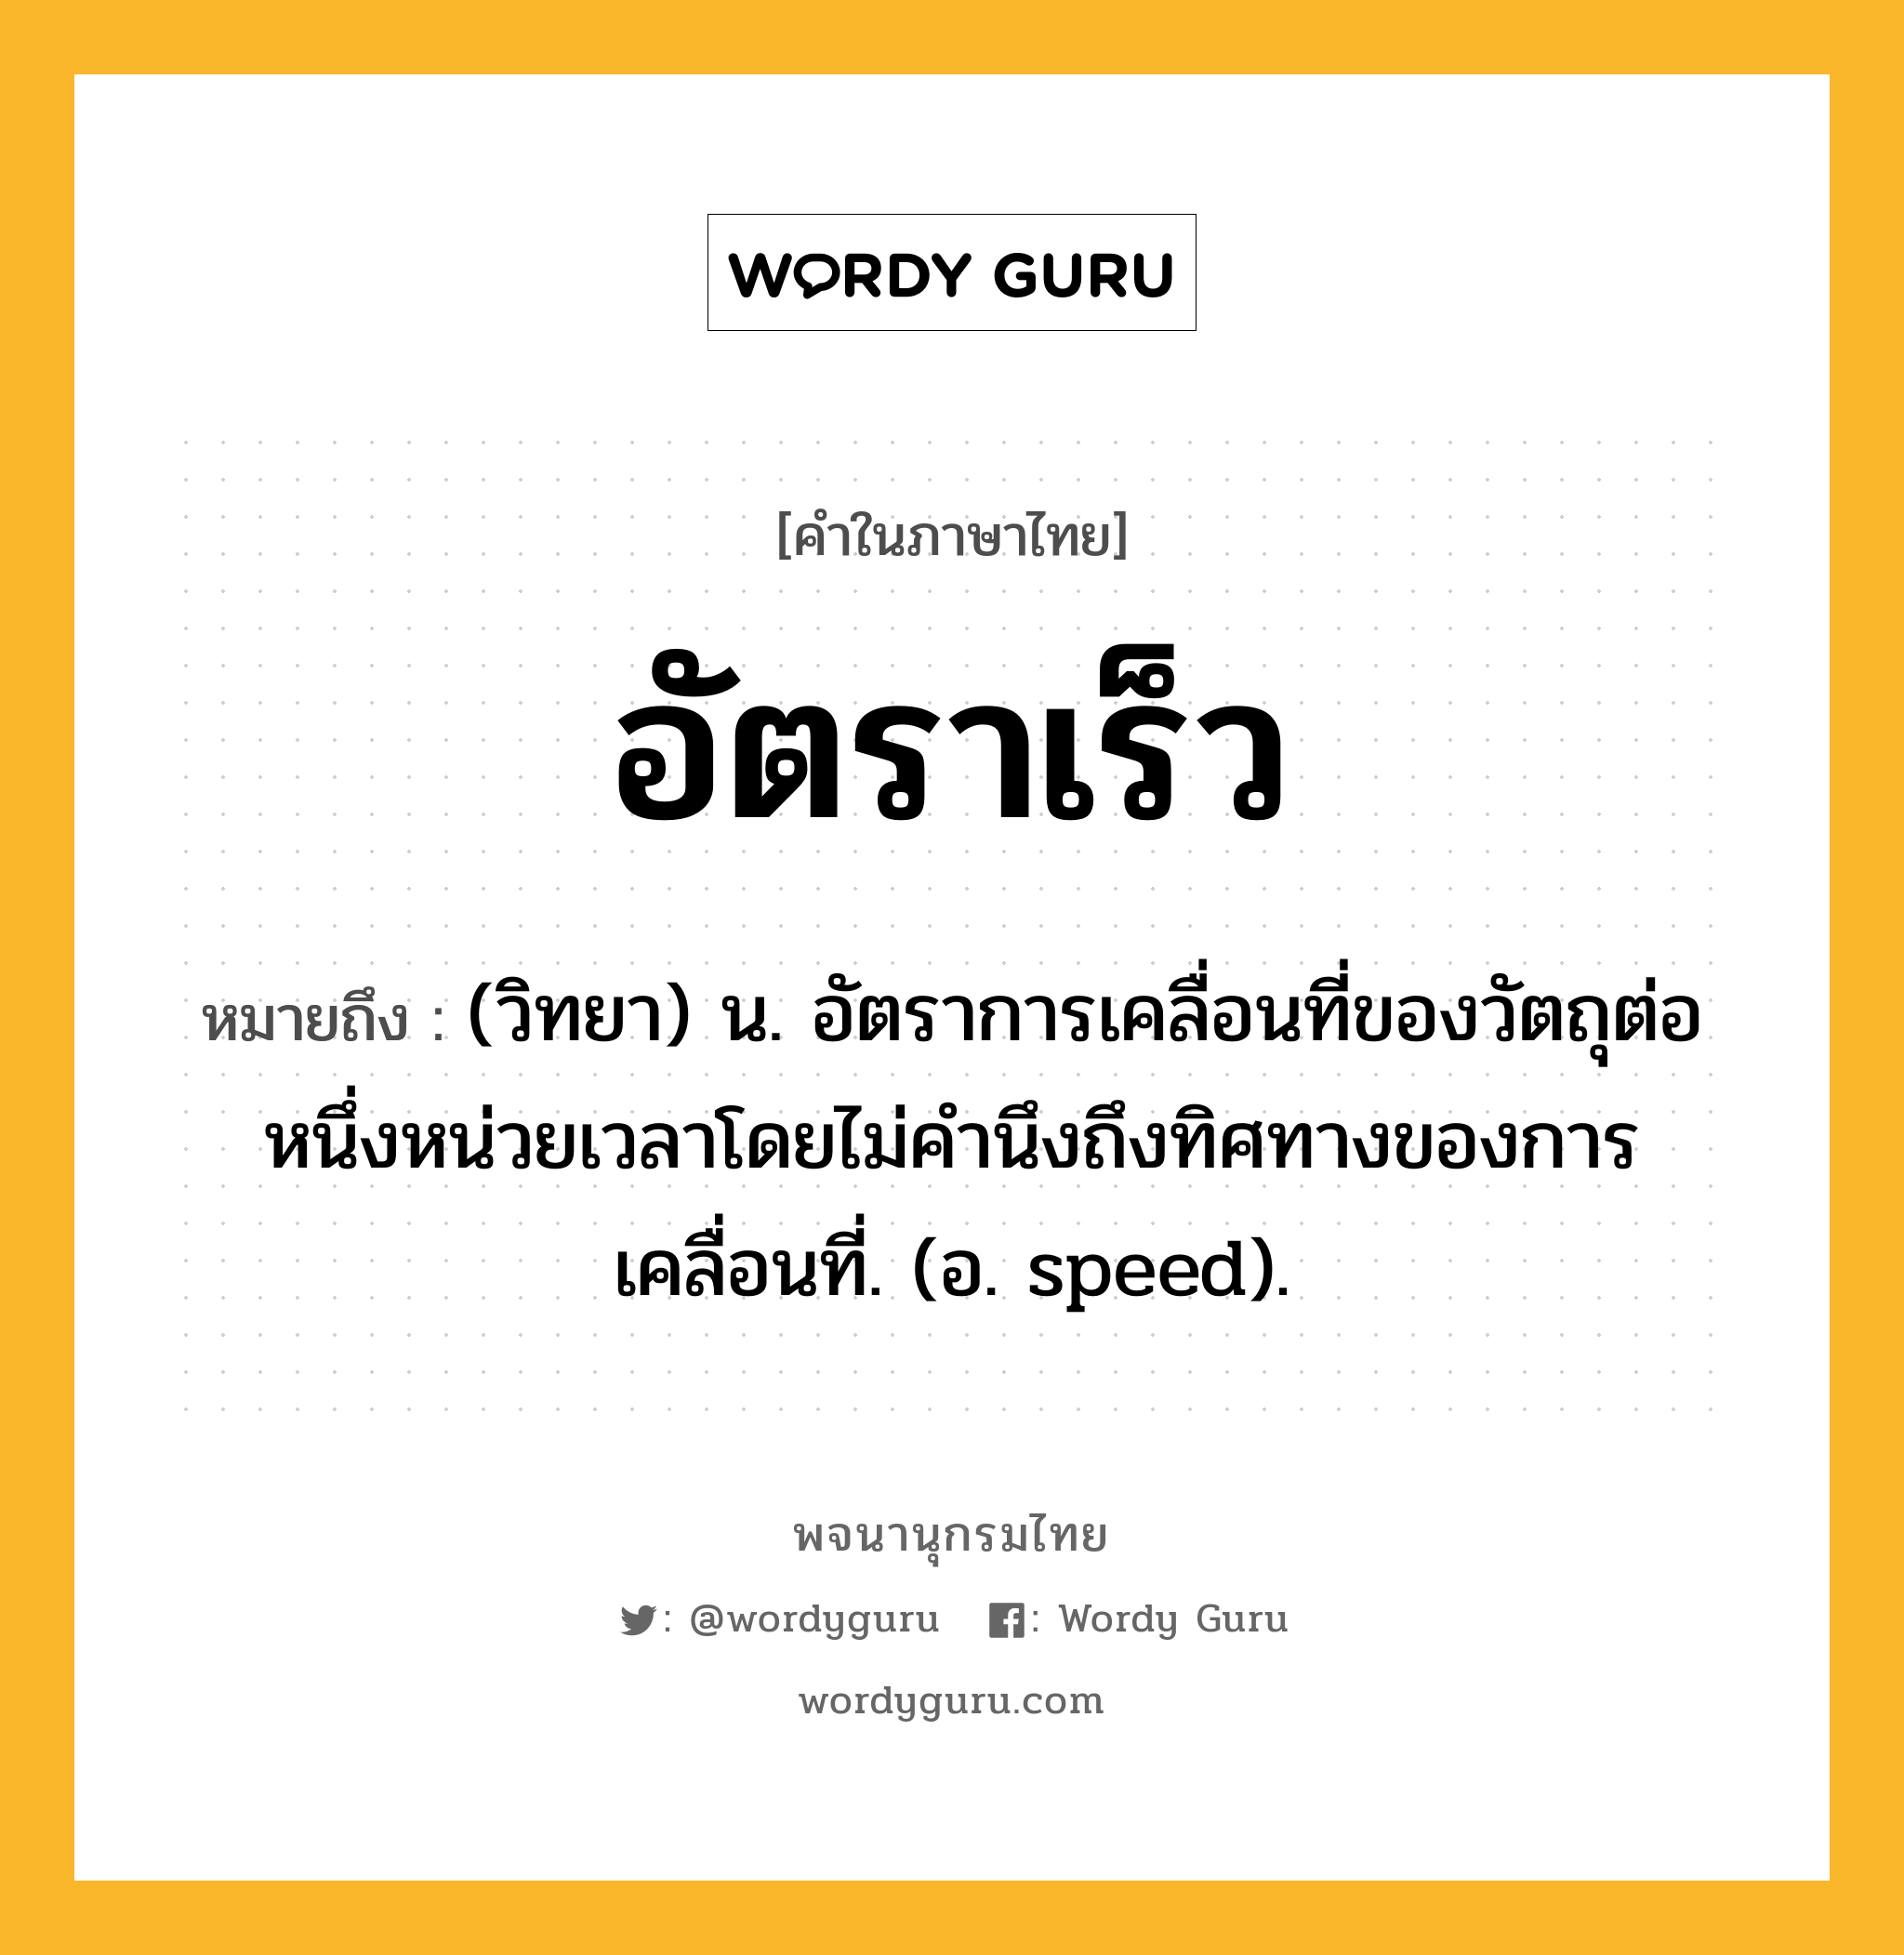 อัตราเร็ว ความหมาย หมายถึงอะไร?, คำในภาษาไทย อัตราเร็ว หมายถึง (วิทยา) น. อัตราการเคลื่อนที่ของวัตถุต่อหนึ่งหน่วยเวลาโดยไม่คํานึงถึงทิศทางของการเคลื่อนที่. (อ. speed).